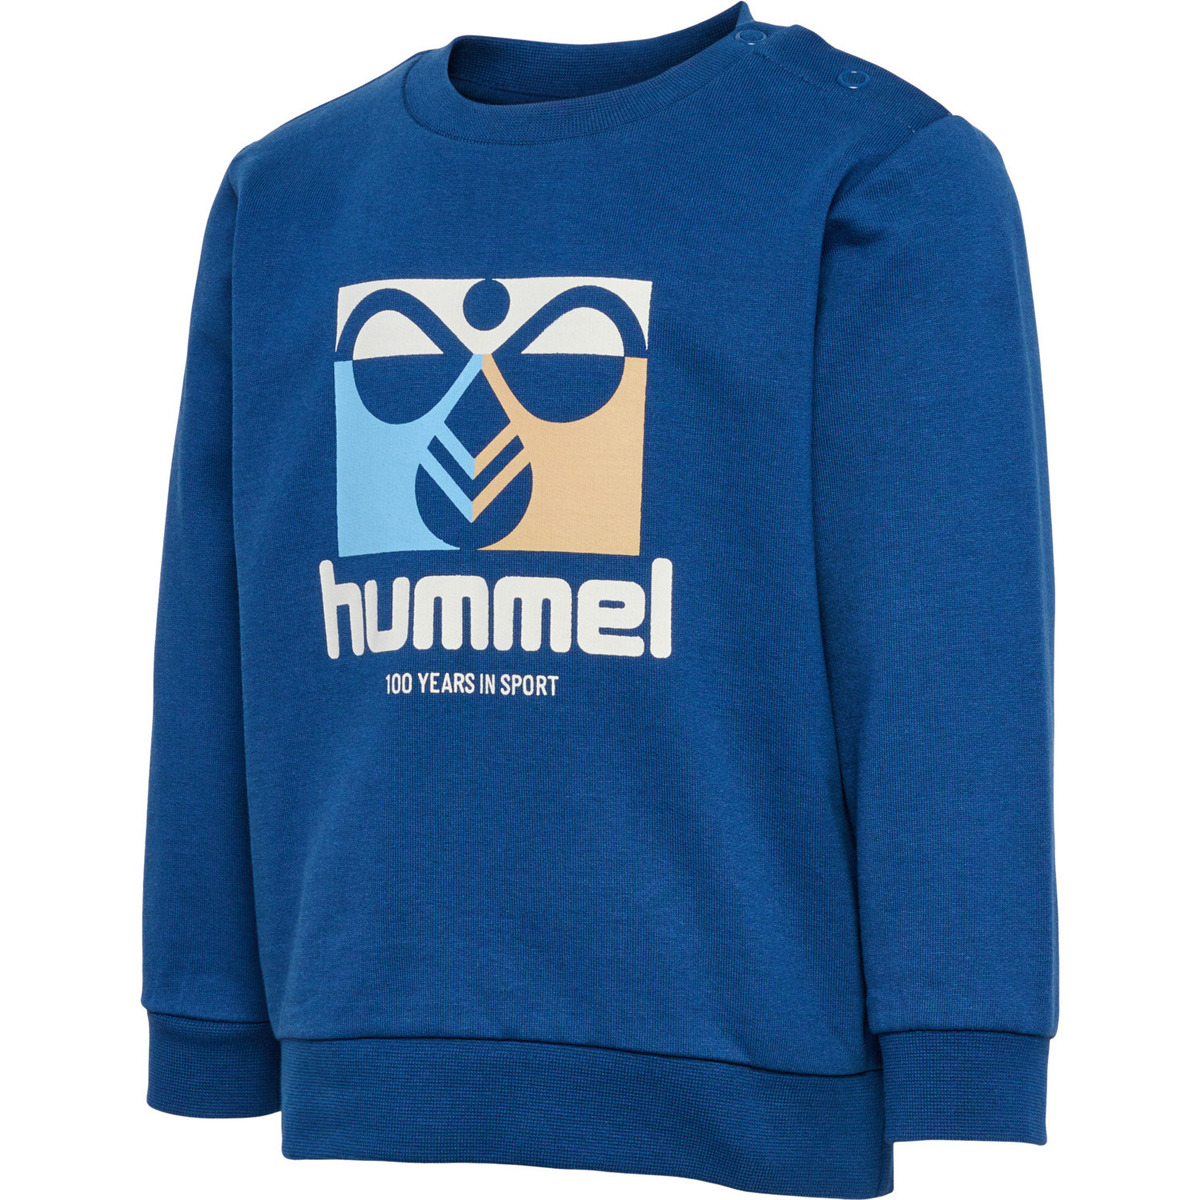 hummel Bleu Sweatshirt enfant hmlLime 3Mbgr4t4